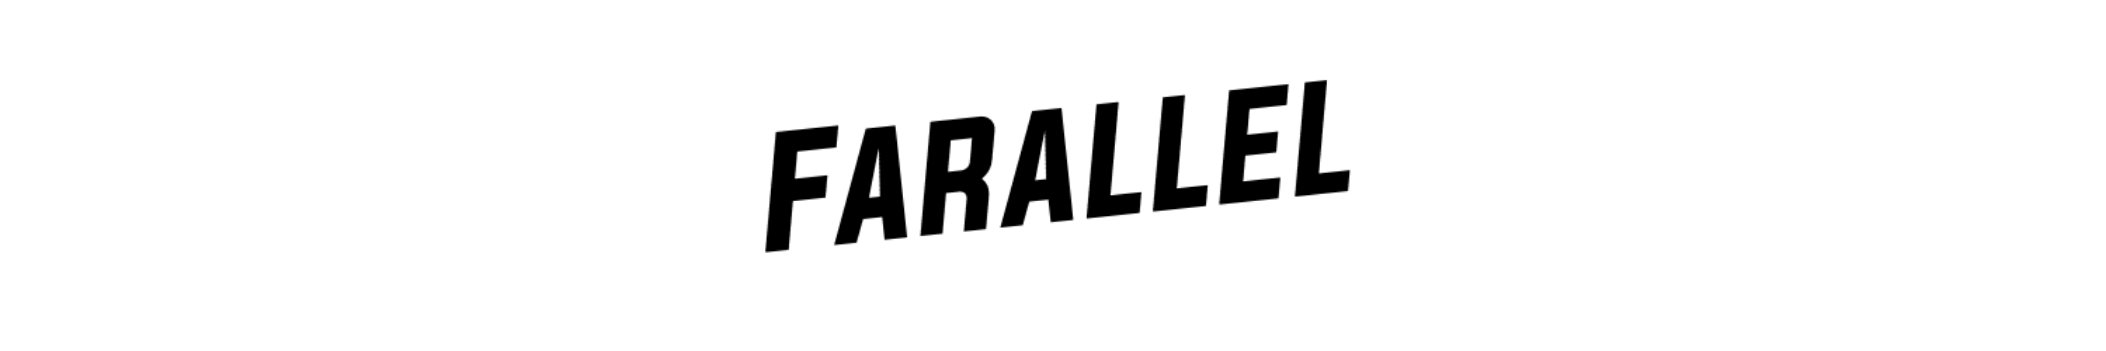 Farallel